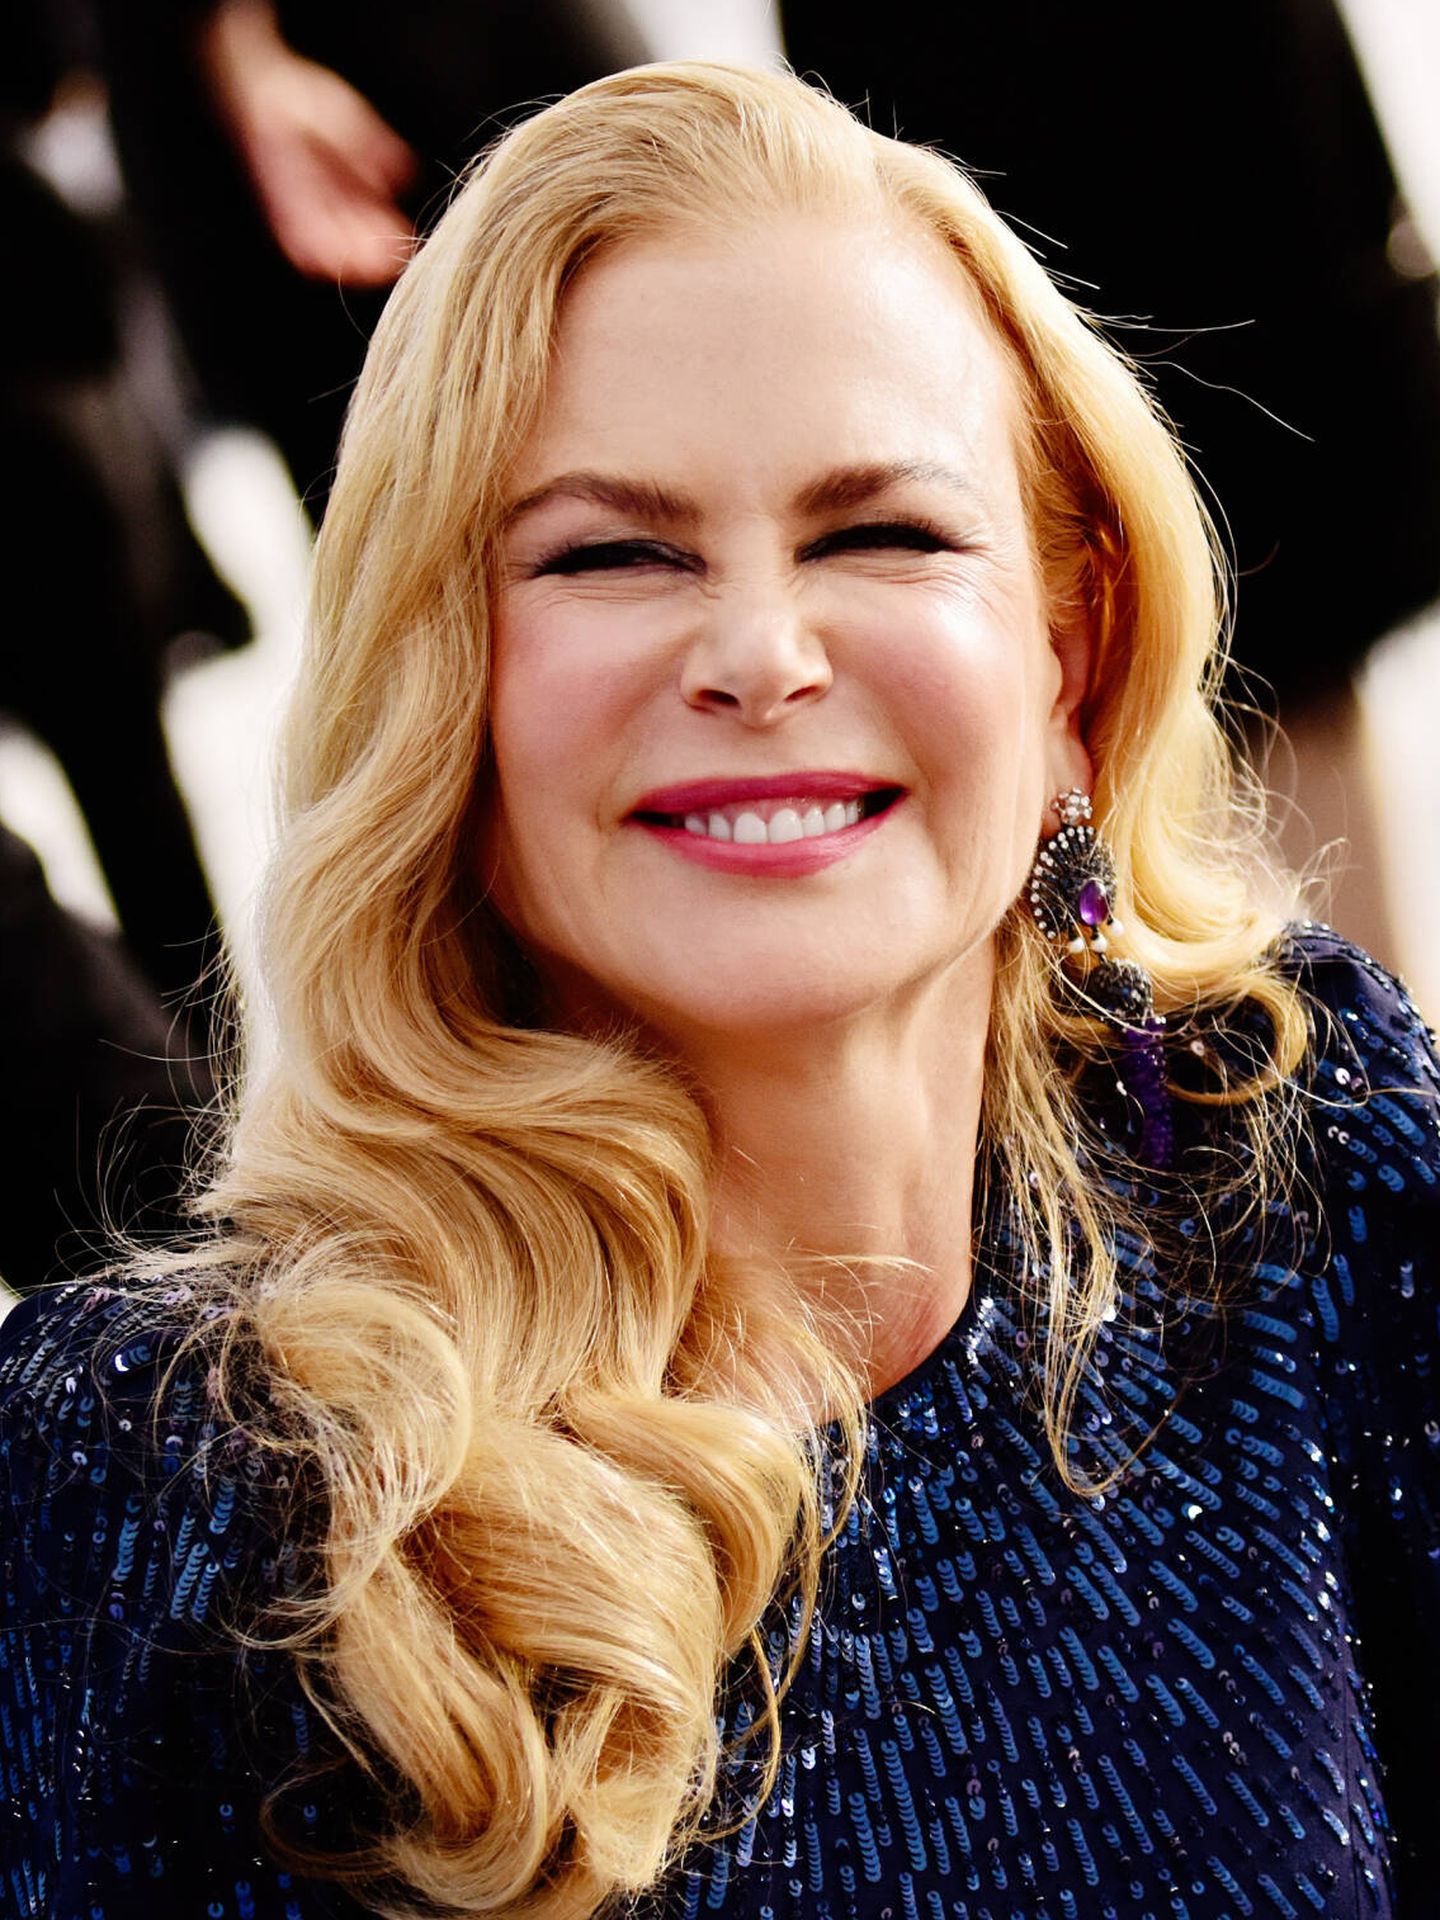 Las arrugas que se forman en alrededor de la nariz de Nicole Kidman son un ejemplo de bunny lines. (Getty/Chelsea Guglielmino)